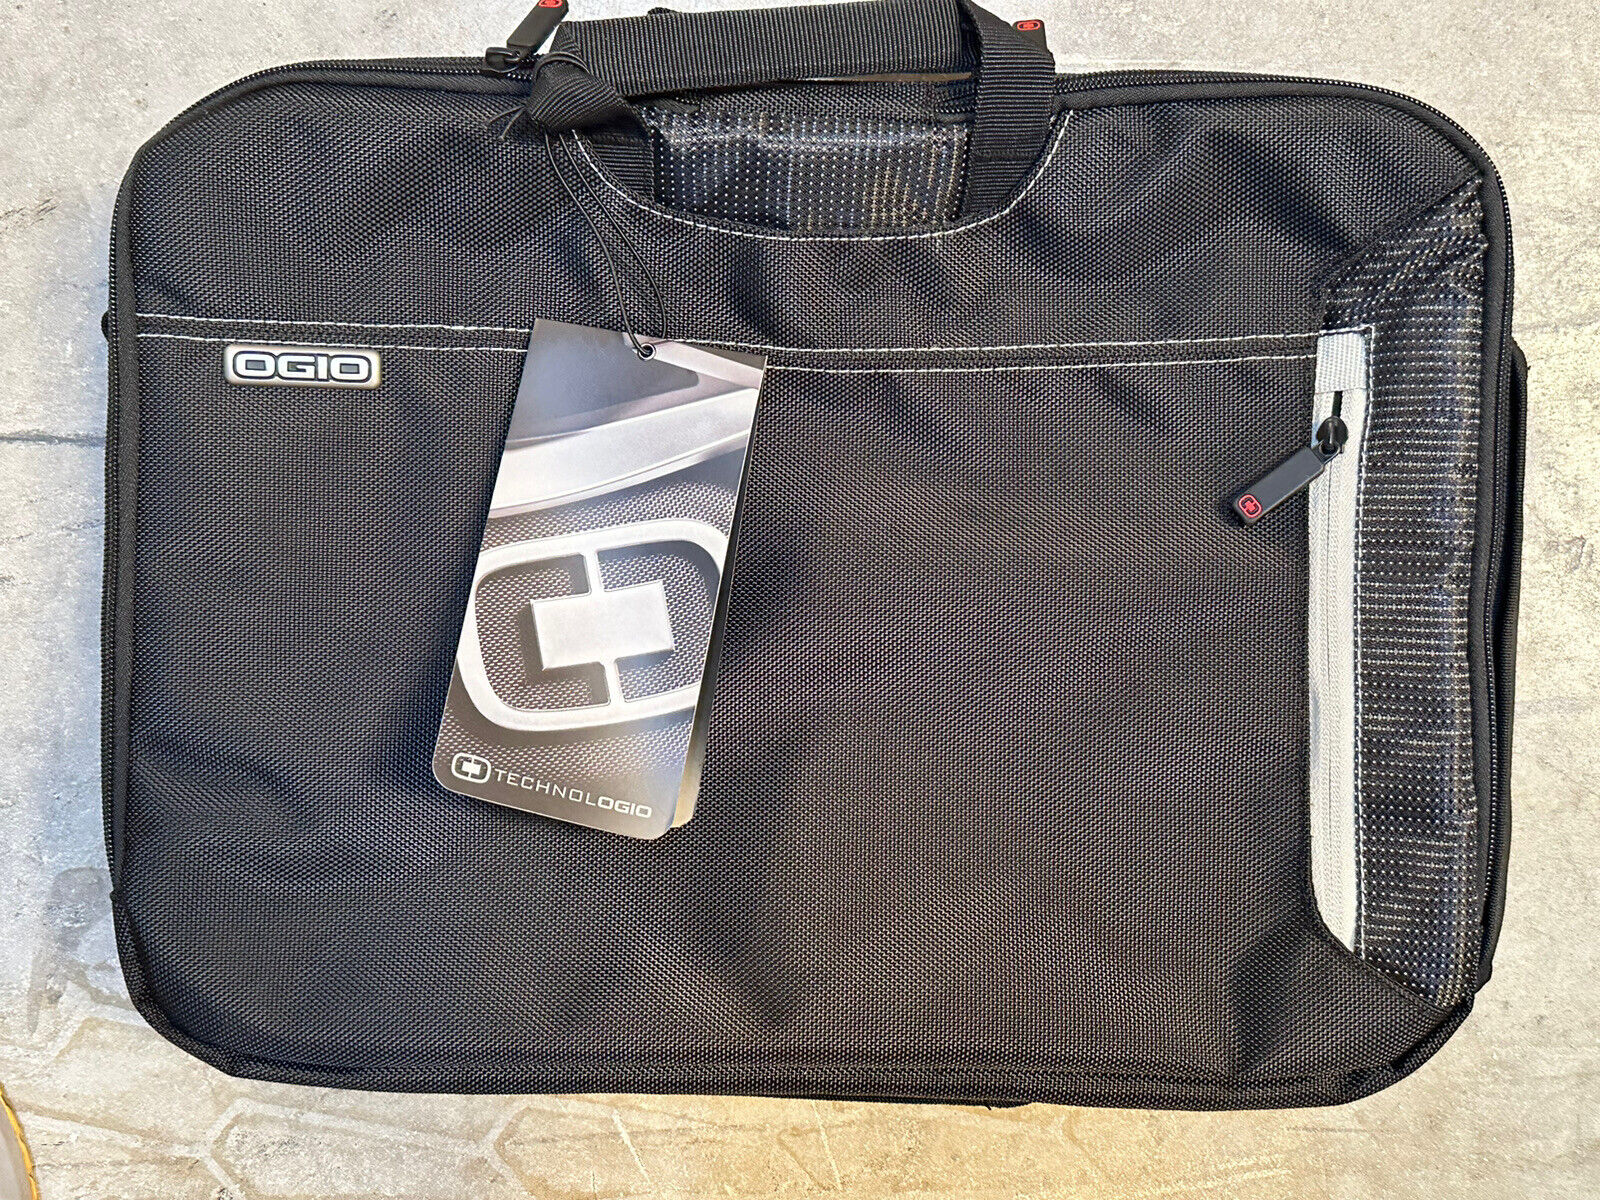 OGIO Technologio Black Laptop Organizer Messenger Shoulder Bag (new old stock)